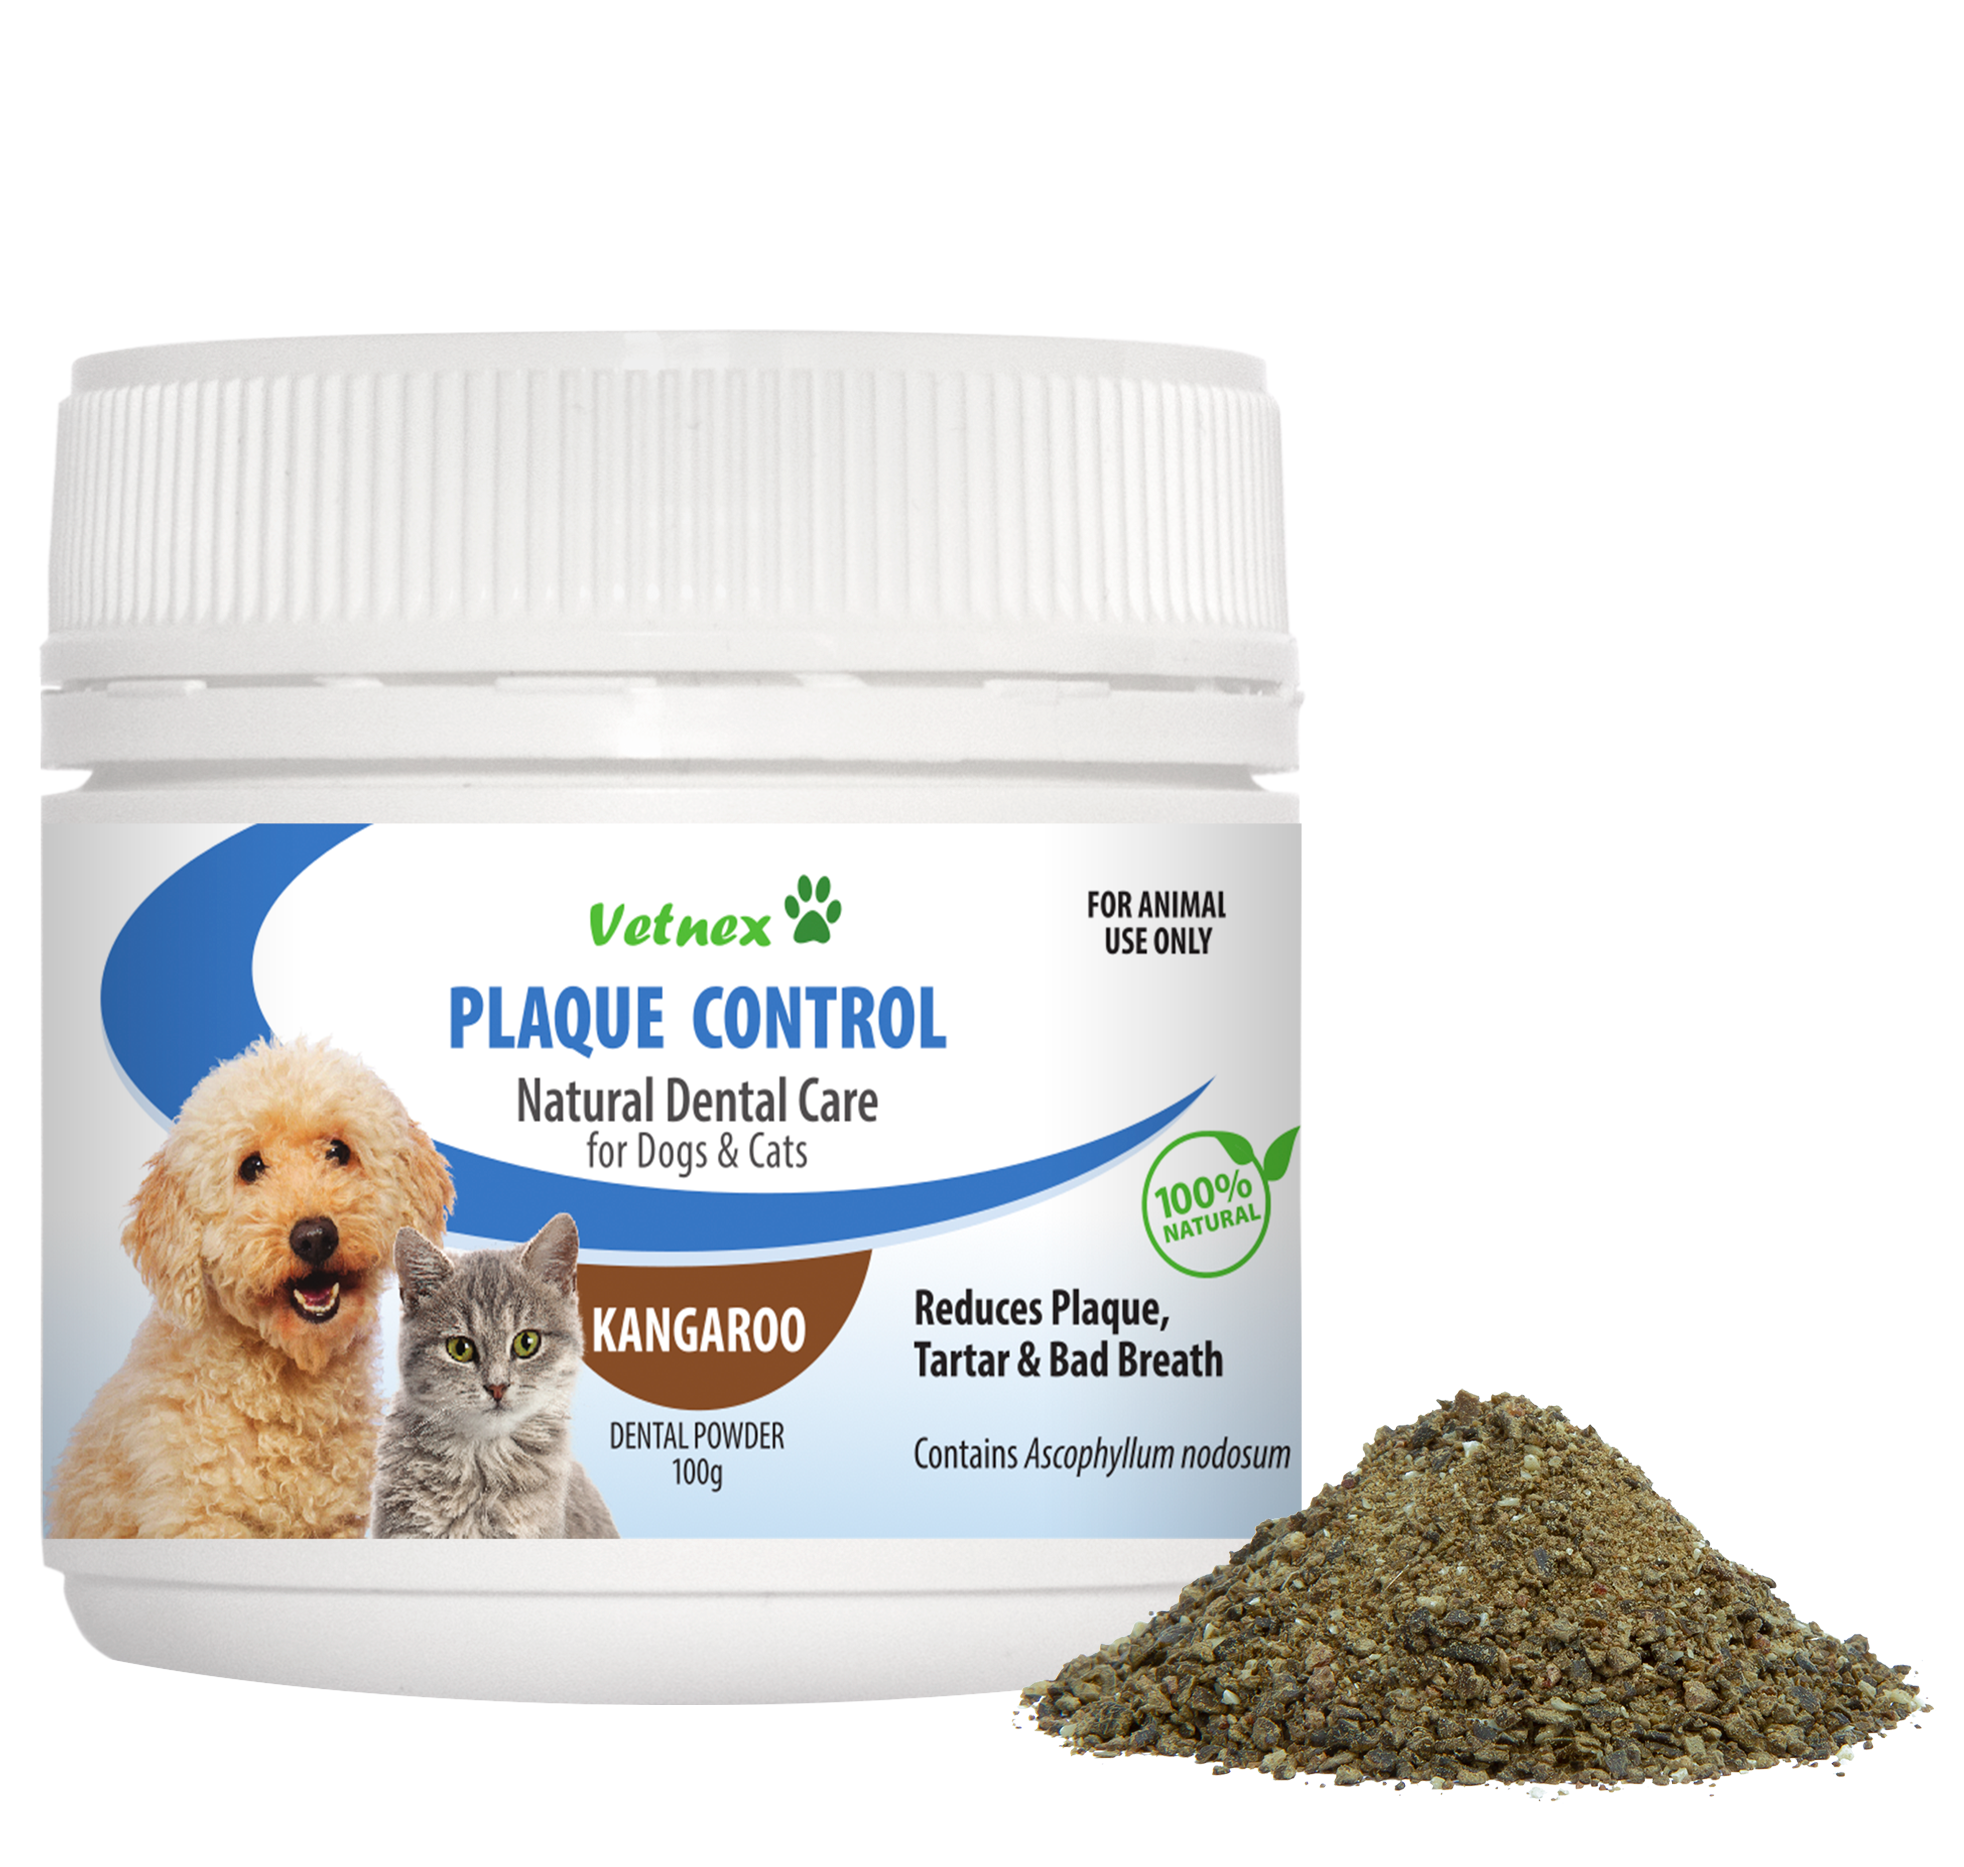 Vetnex Plaque Control Dental Powder (Kangaroo) for Dogs & Cats 100g